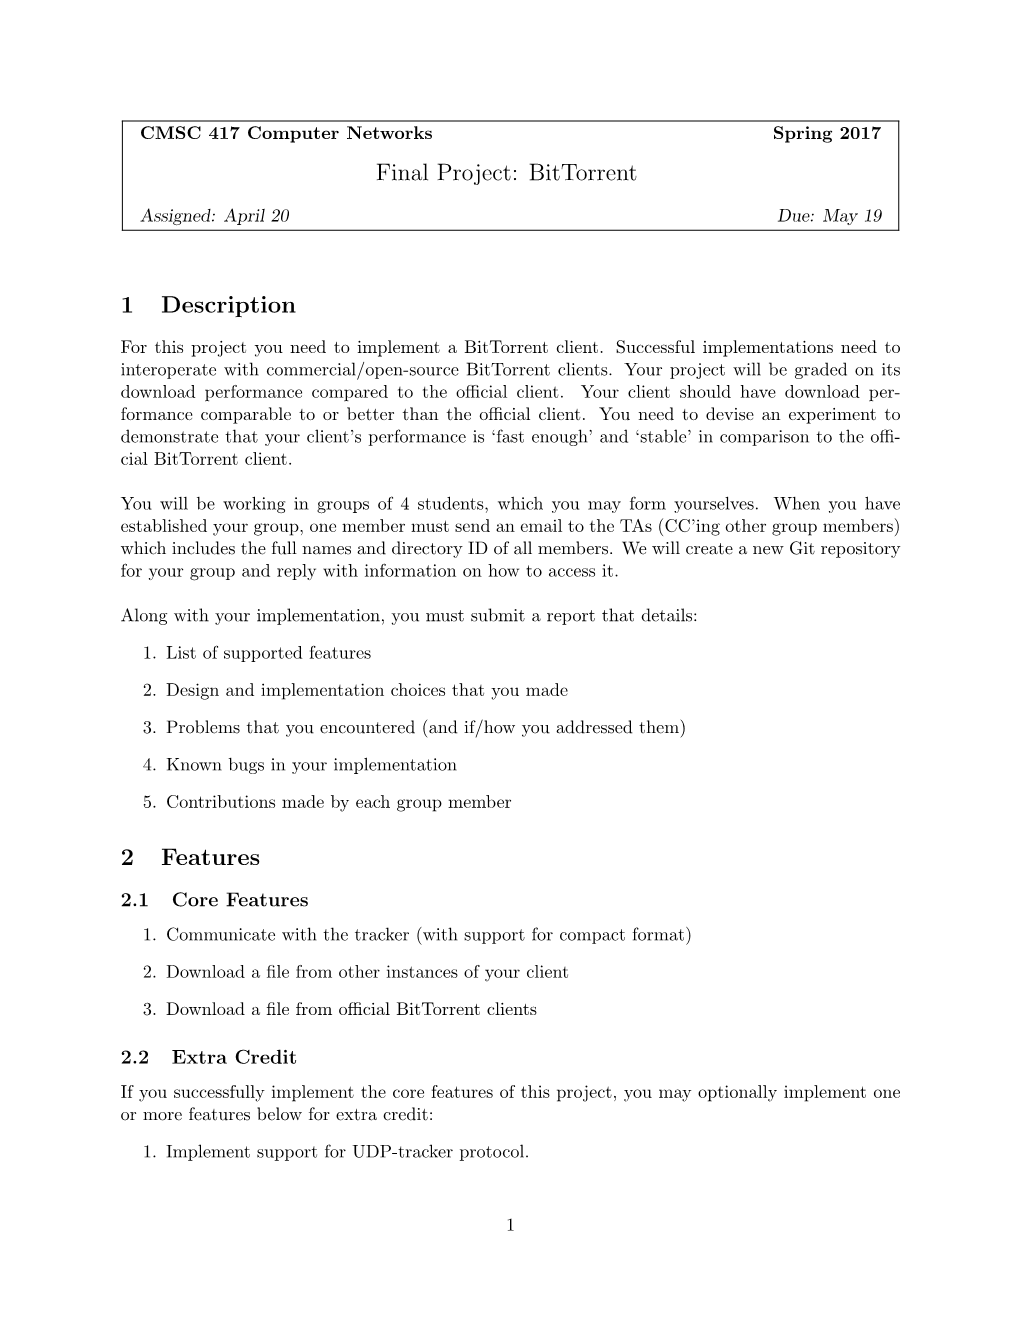 Final Project: Bittorrent 1 Description 2 Features